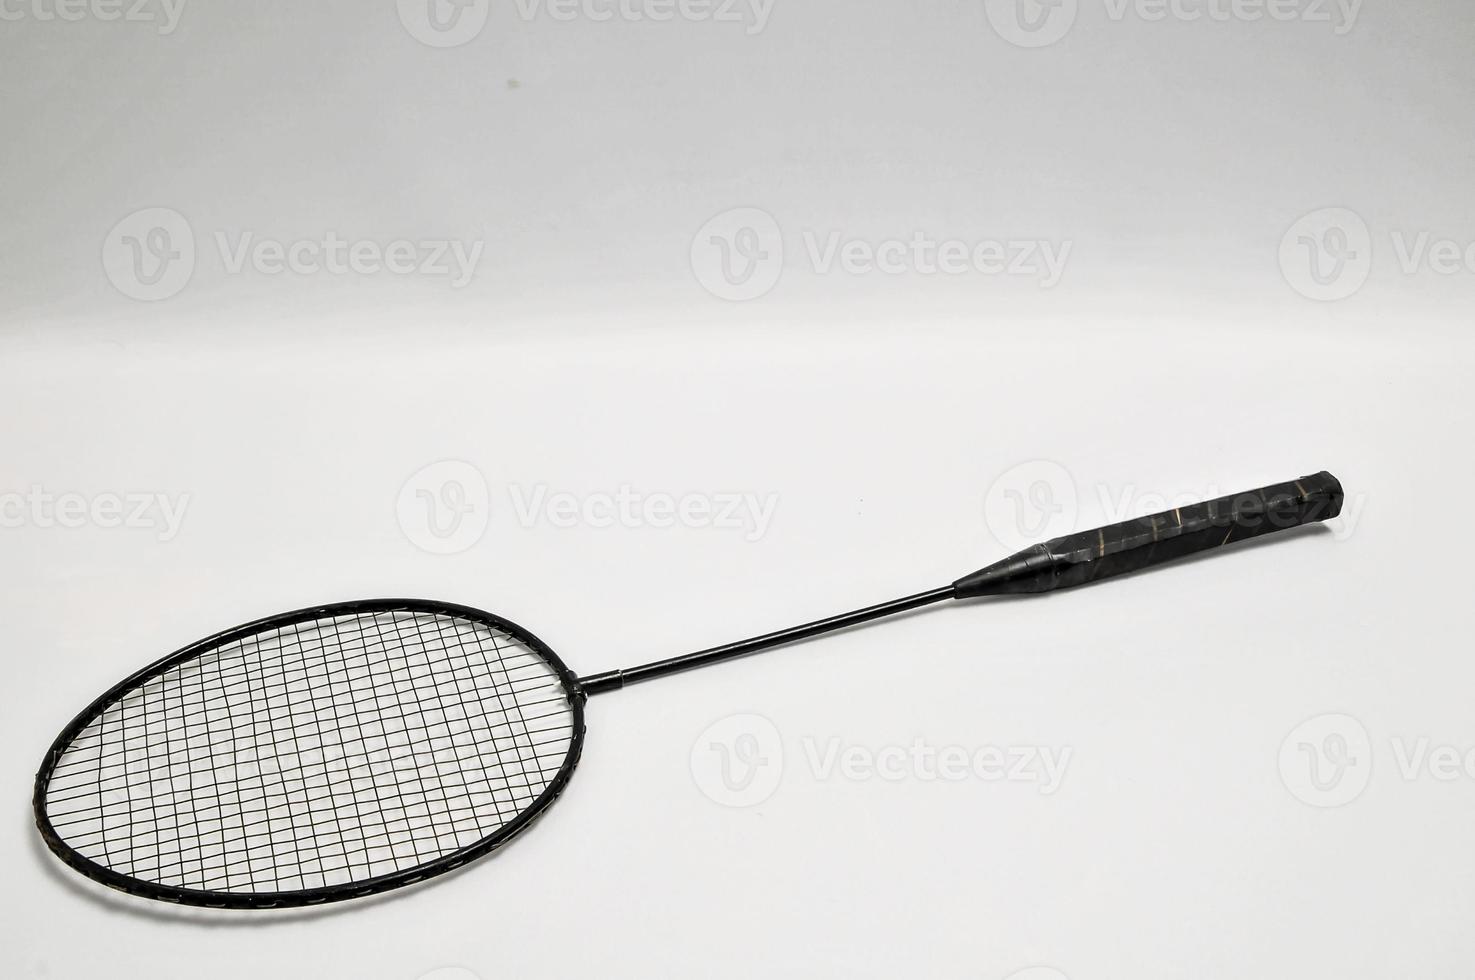 Raquette de tennis vintage sur fond blanc photo